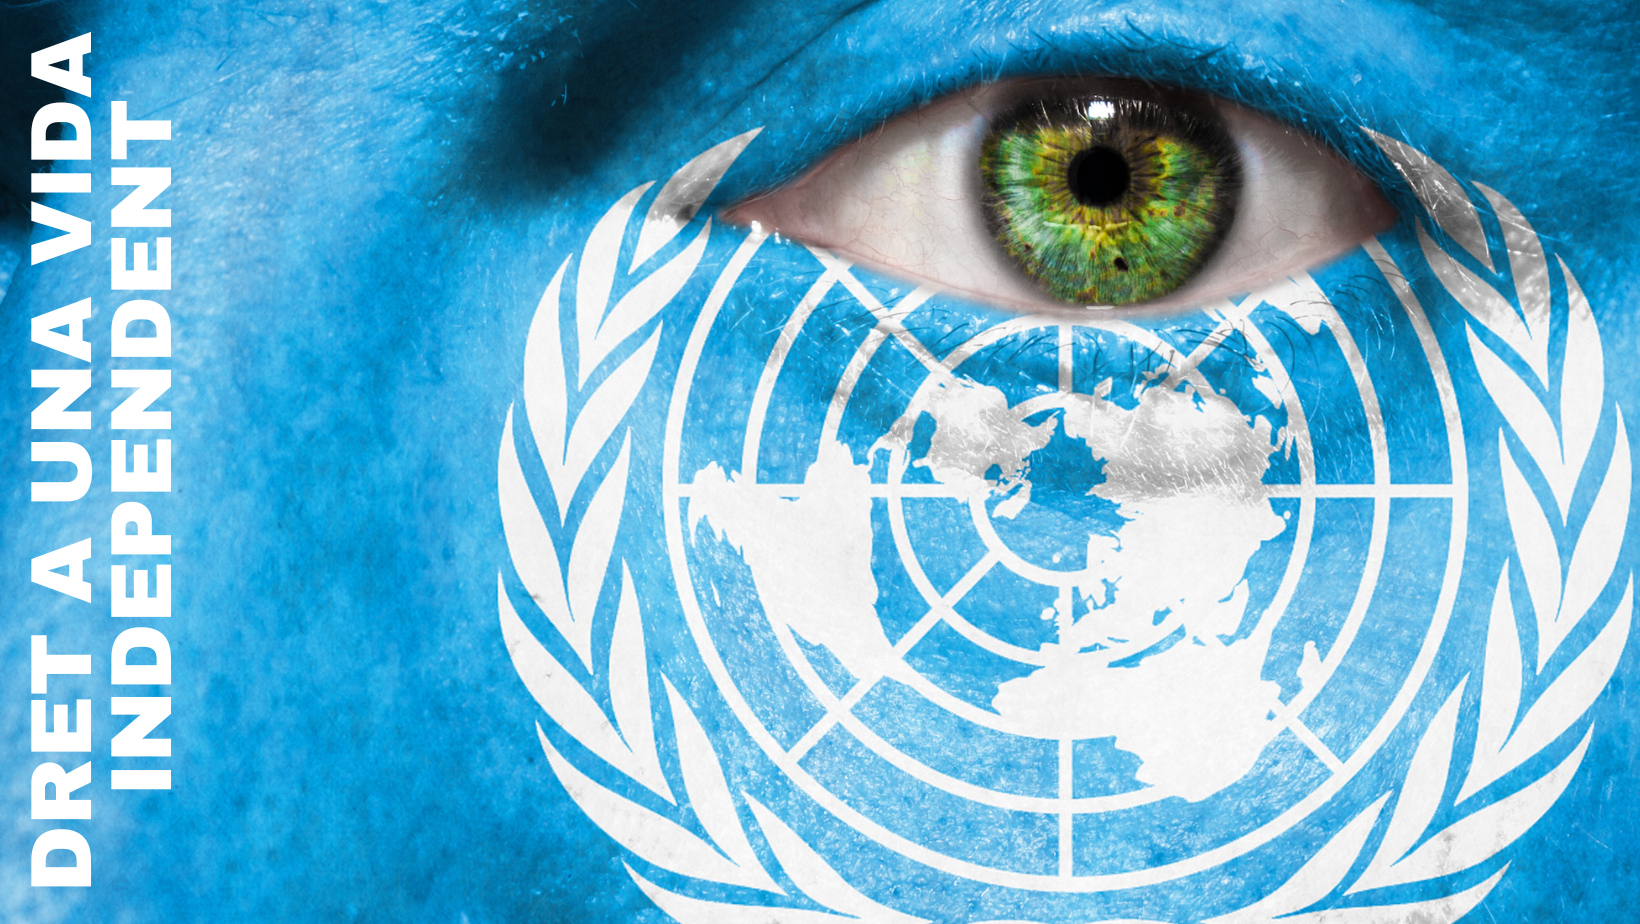 Una cara pintada de blau amb un dibuix del logo de Nacions Unides a sota de l'ull